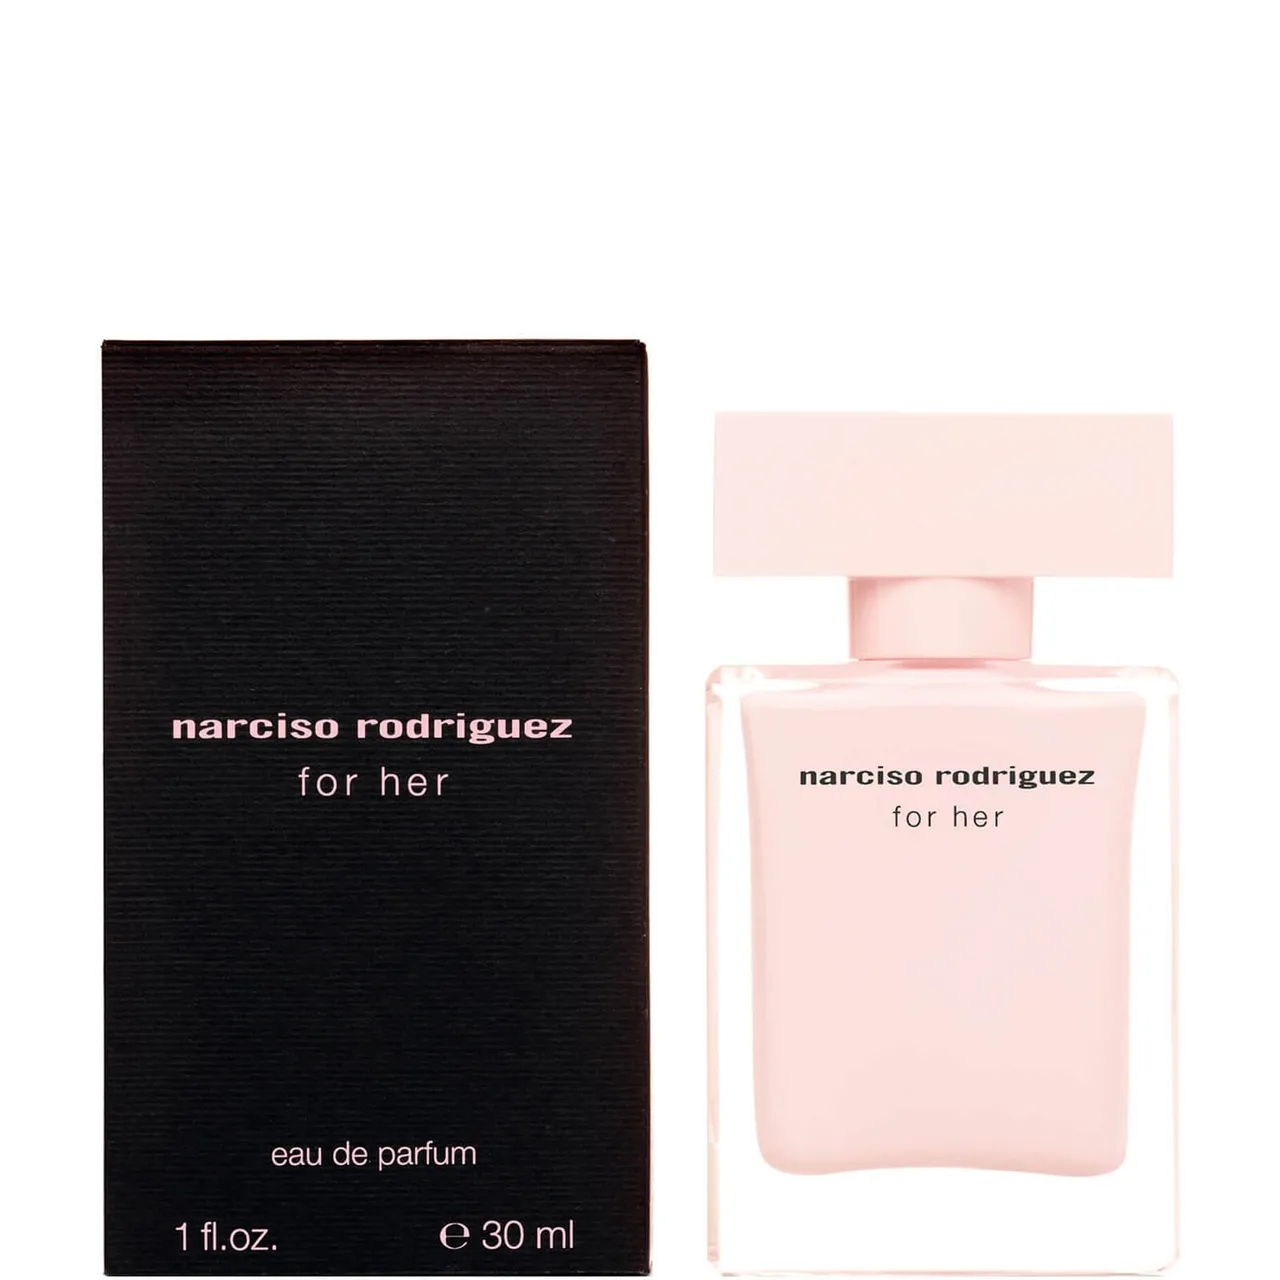 Narciso Rodriguez Eau de Parfum voor vrouwen - 30ml